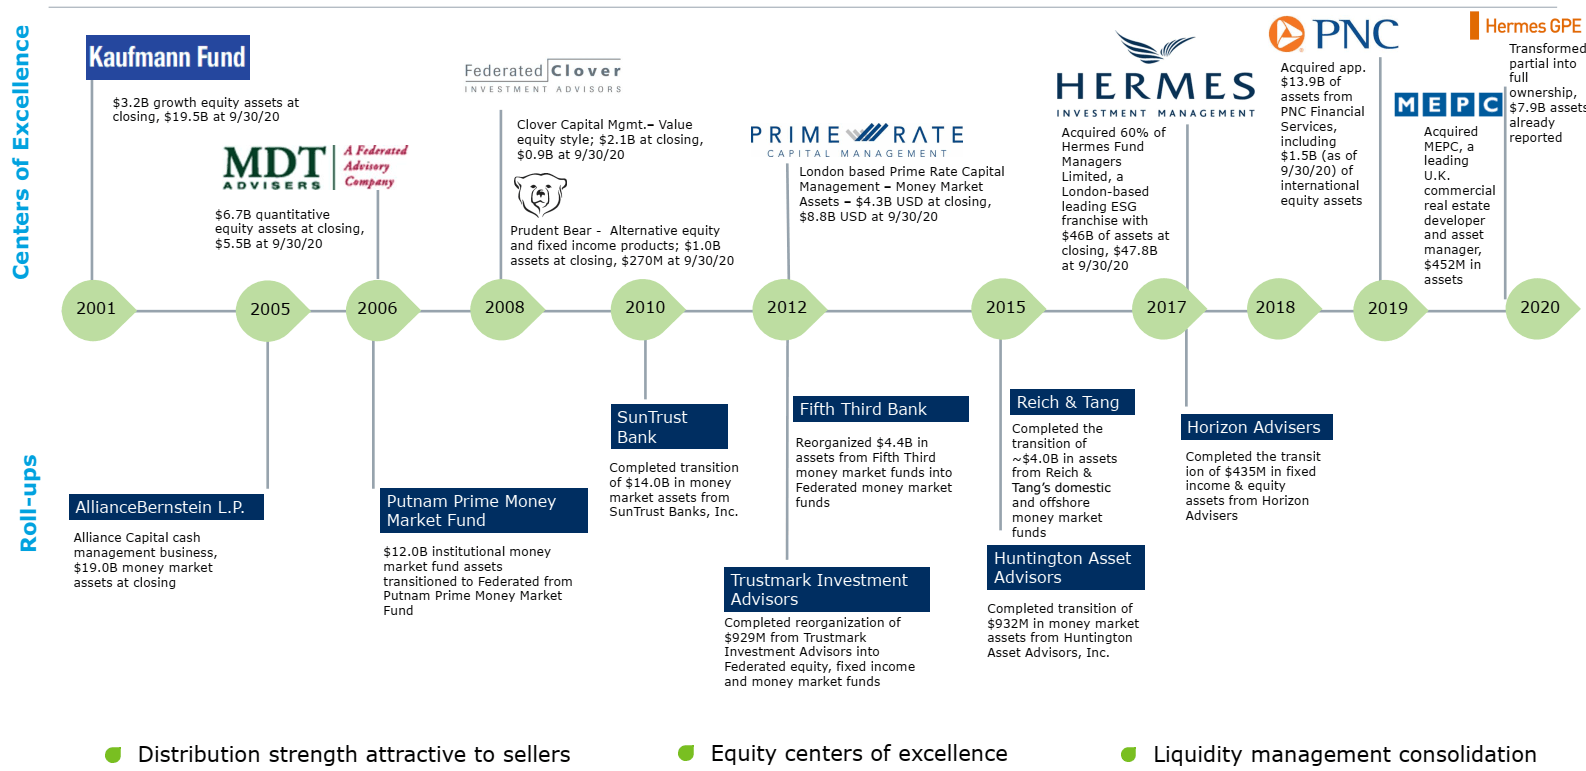 Federated Hermes, Inc. (NYSE:FHI) Seasonal Chart